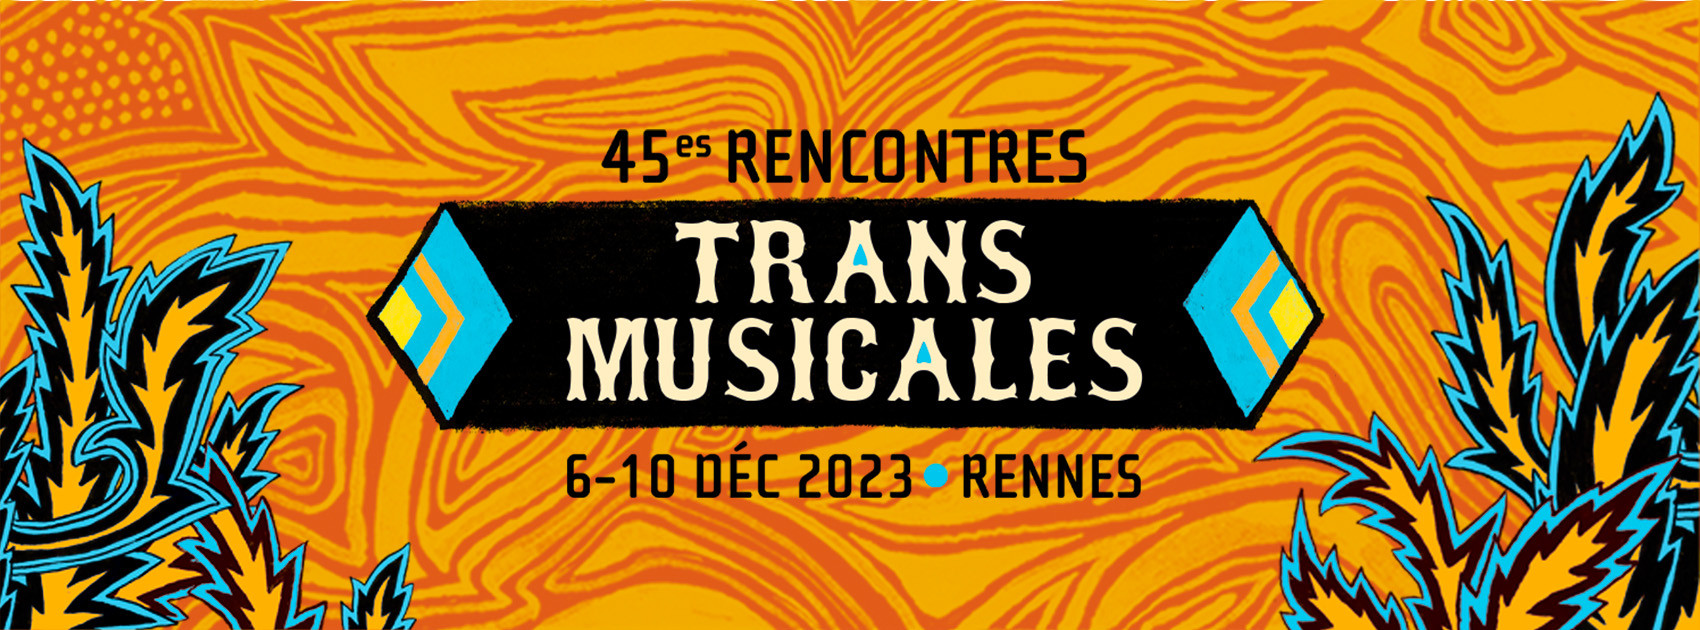 45e Trans Musicales de Rennes